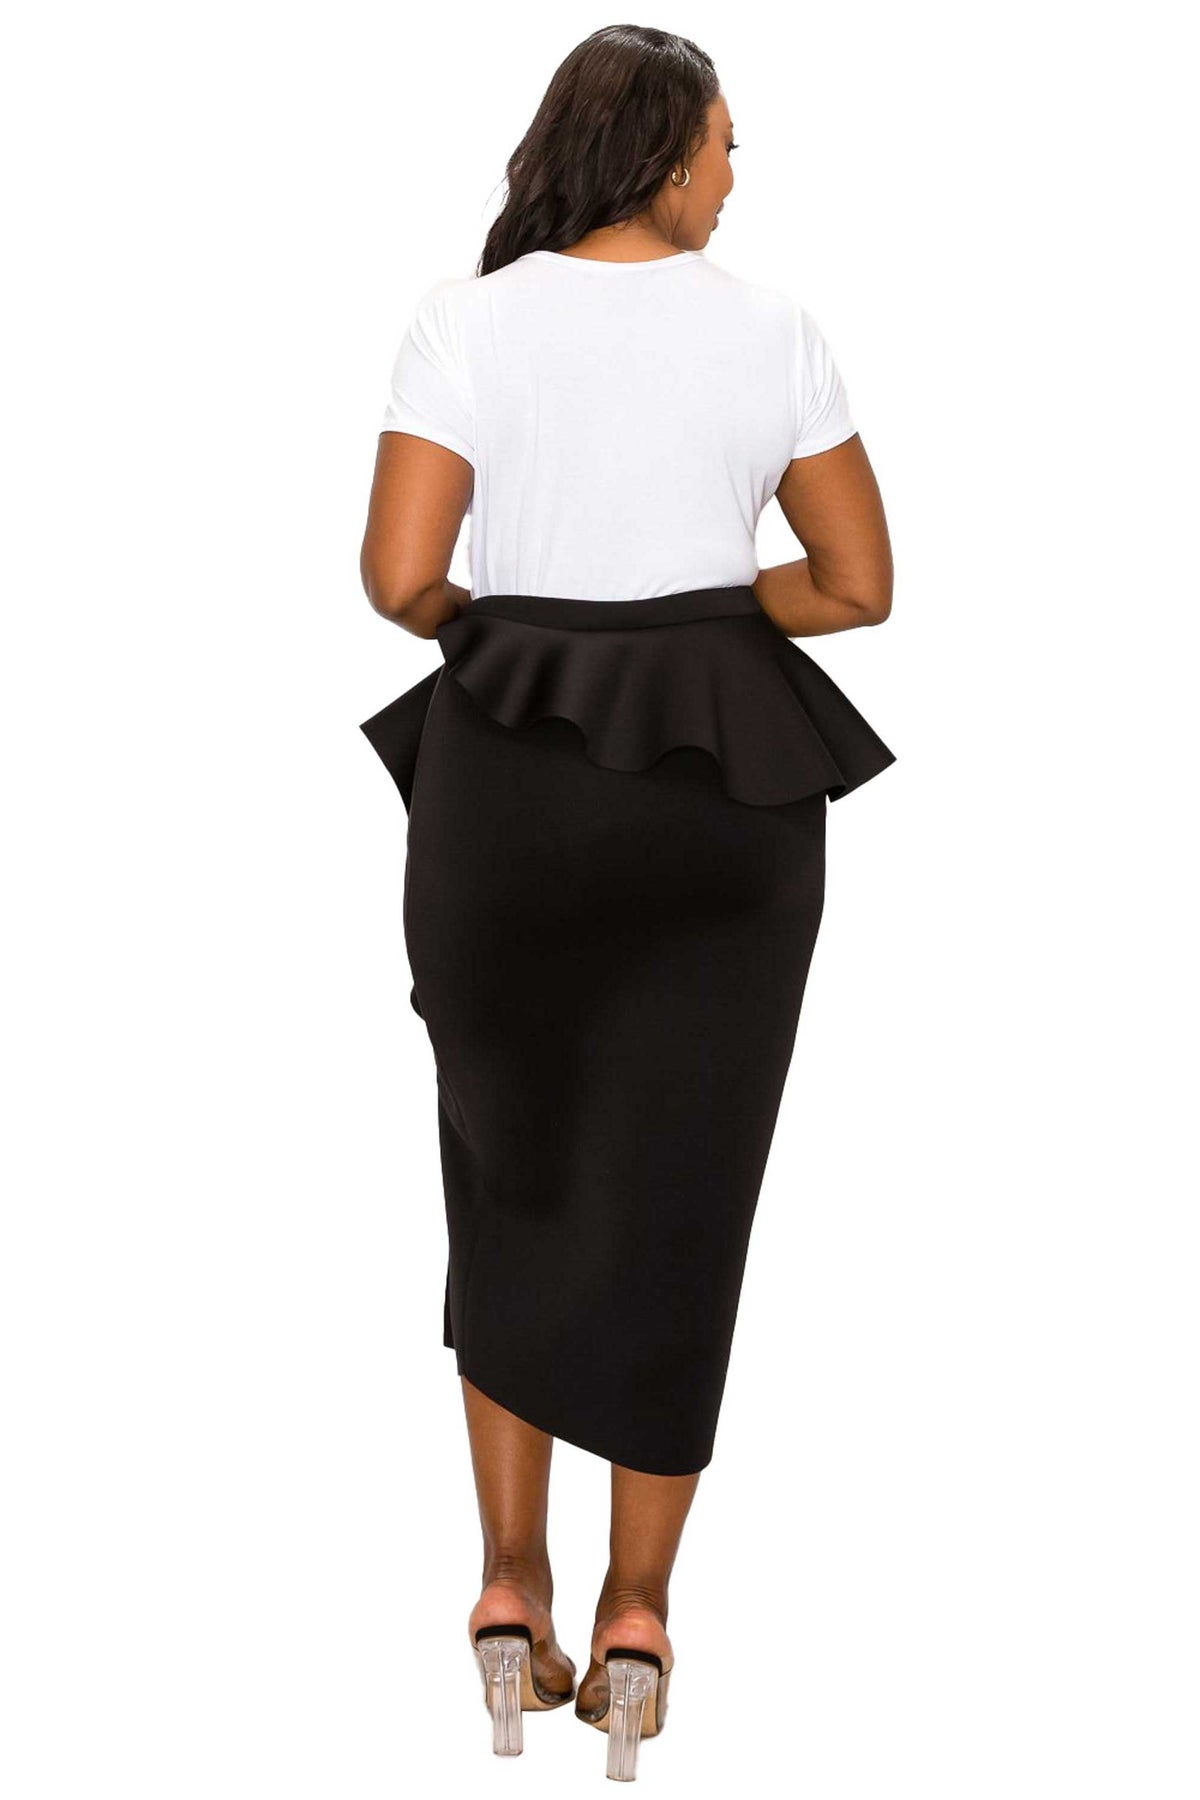 livd L I V D women's trendy contemporary plus size peplum midi skirt with ruffles and leg slit neoprene air scuba fabric in black